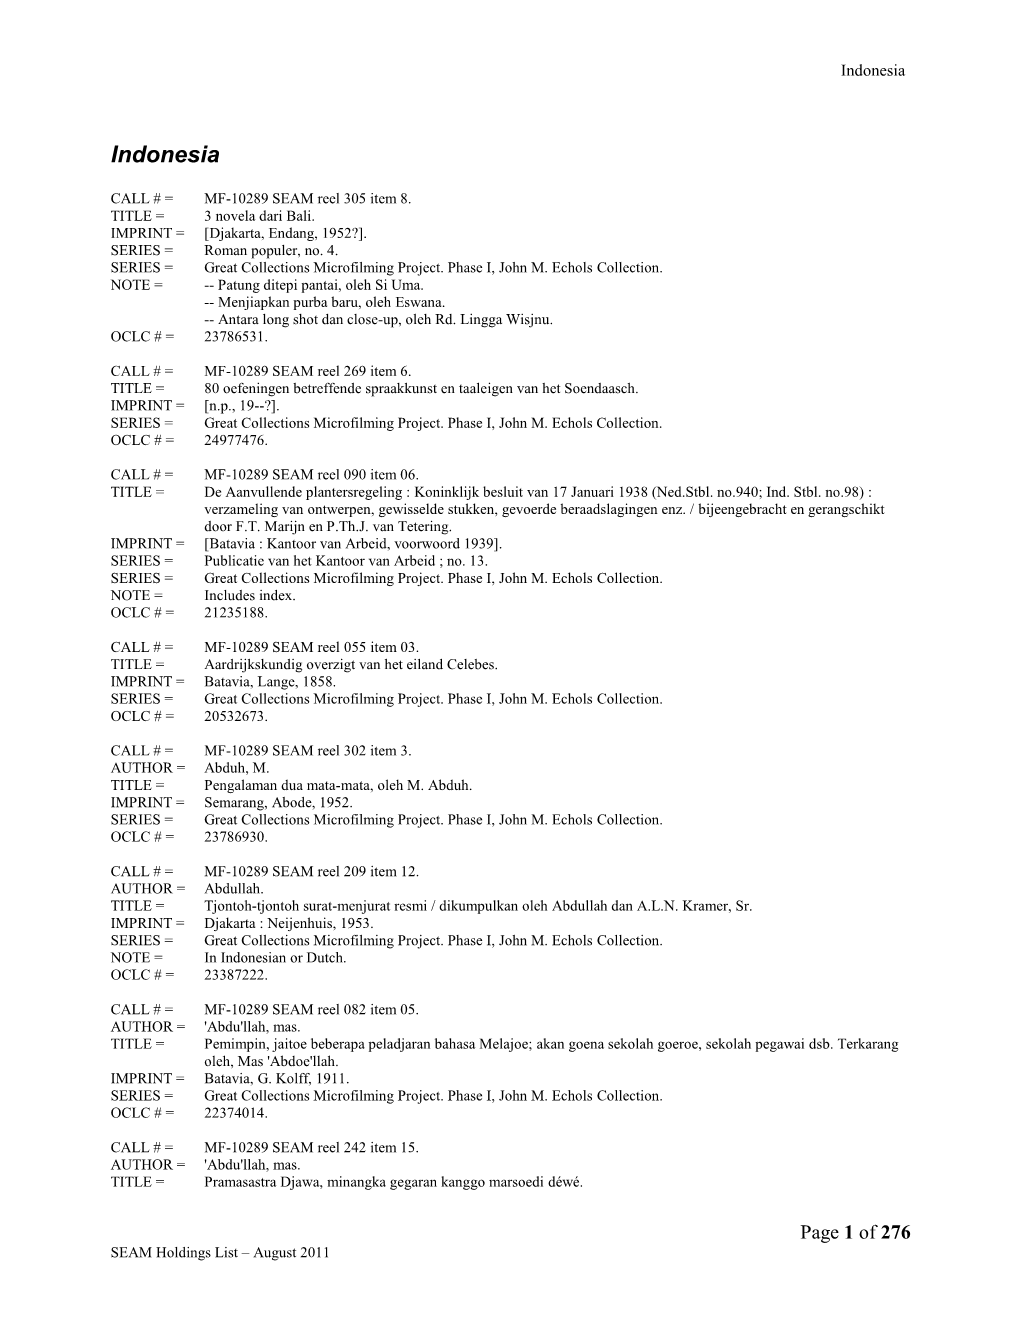 SEAM Holdings List – August 2011 Indonesia